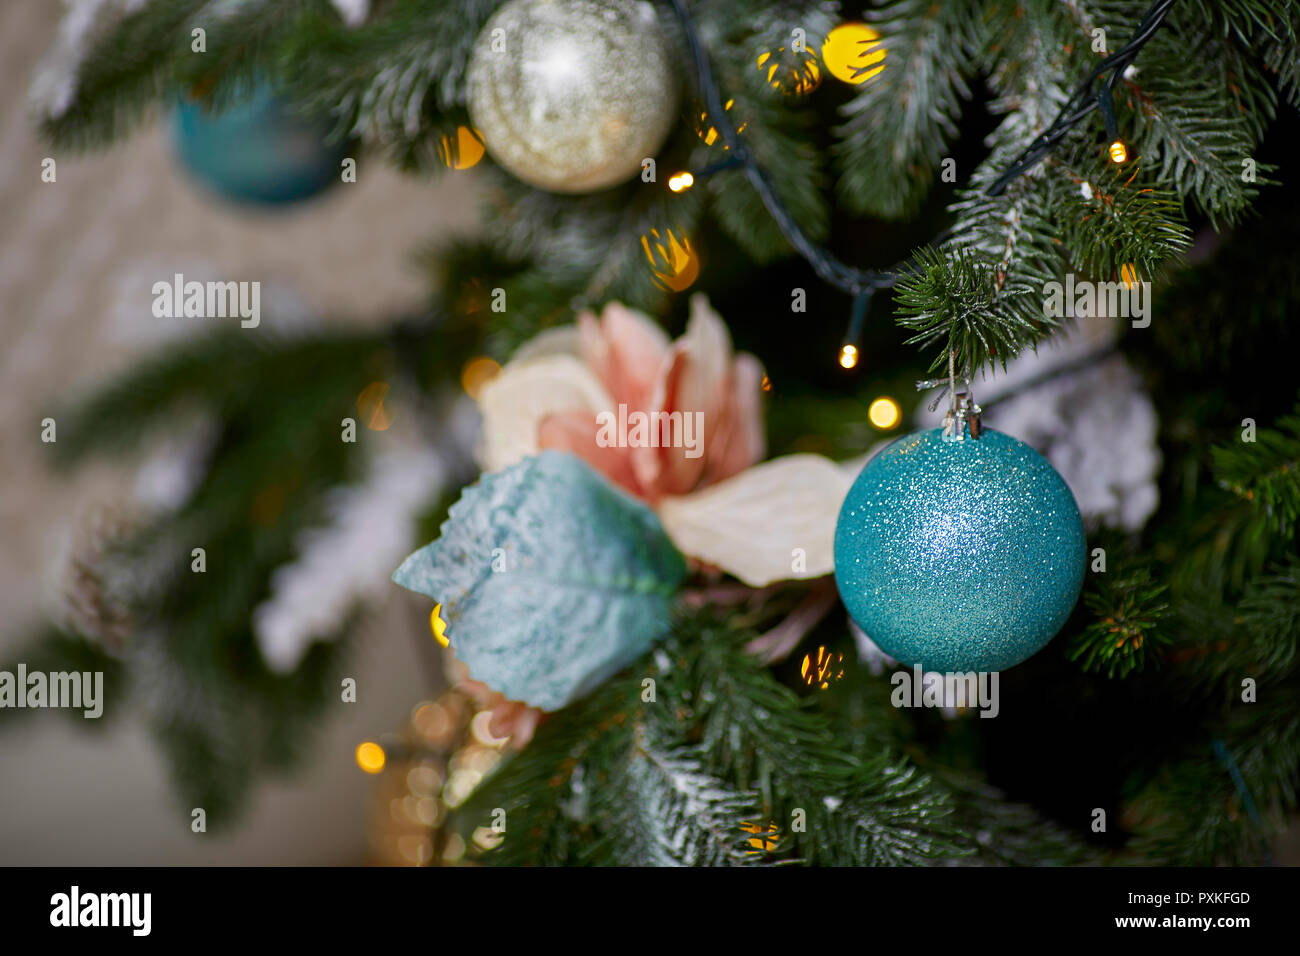 Albero Di Natale Stretto.Giocattoli Di Natale Sull Albero Di Natale Con Un Angolo Stretto Foto Stock Alamy